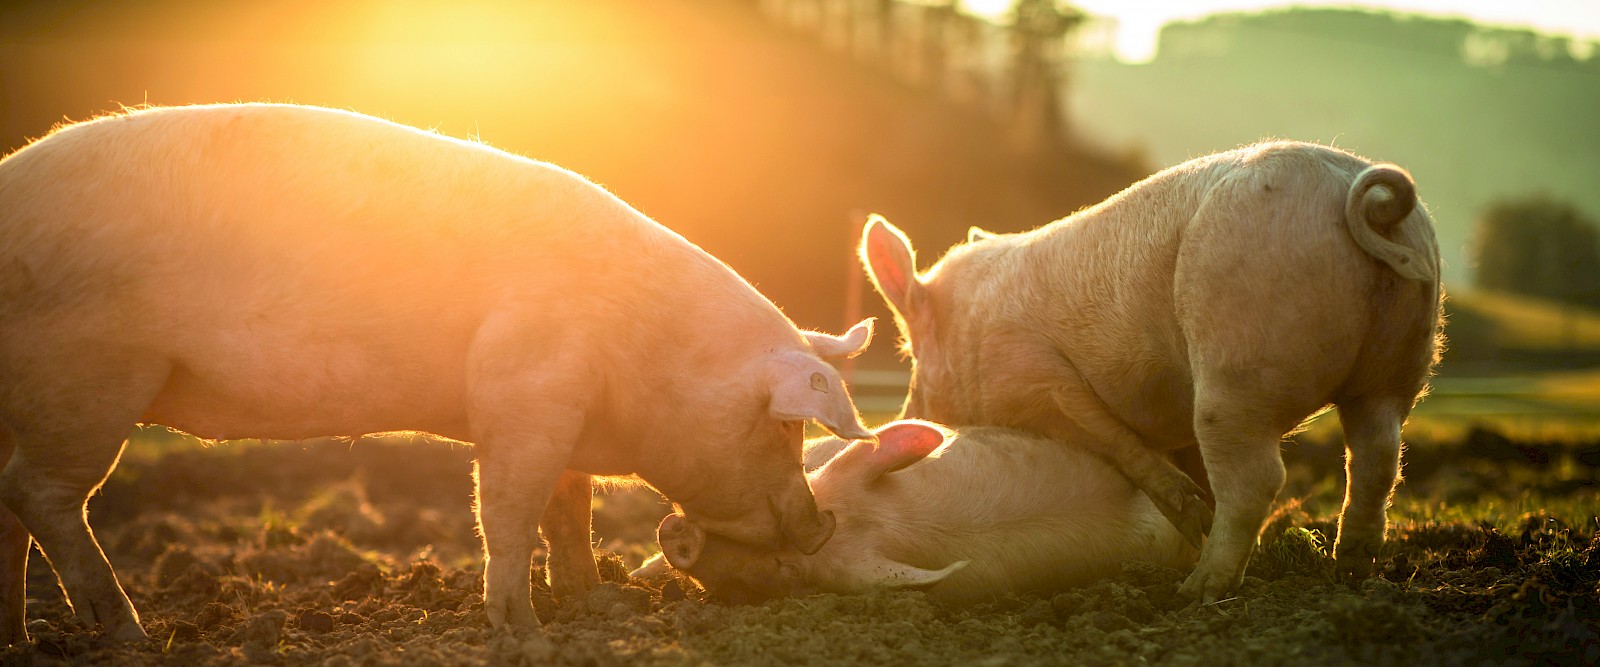 Tierwohl - Glückliche Schweine wühlen im Dreck (© lightpoet - stock.adobe.com).